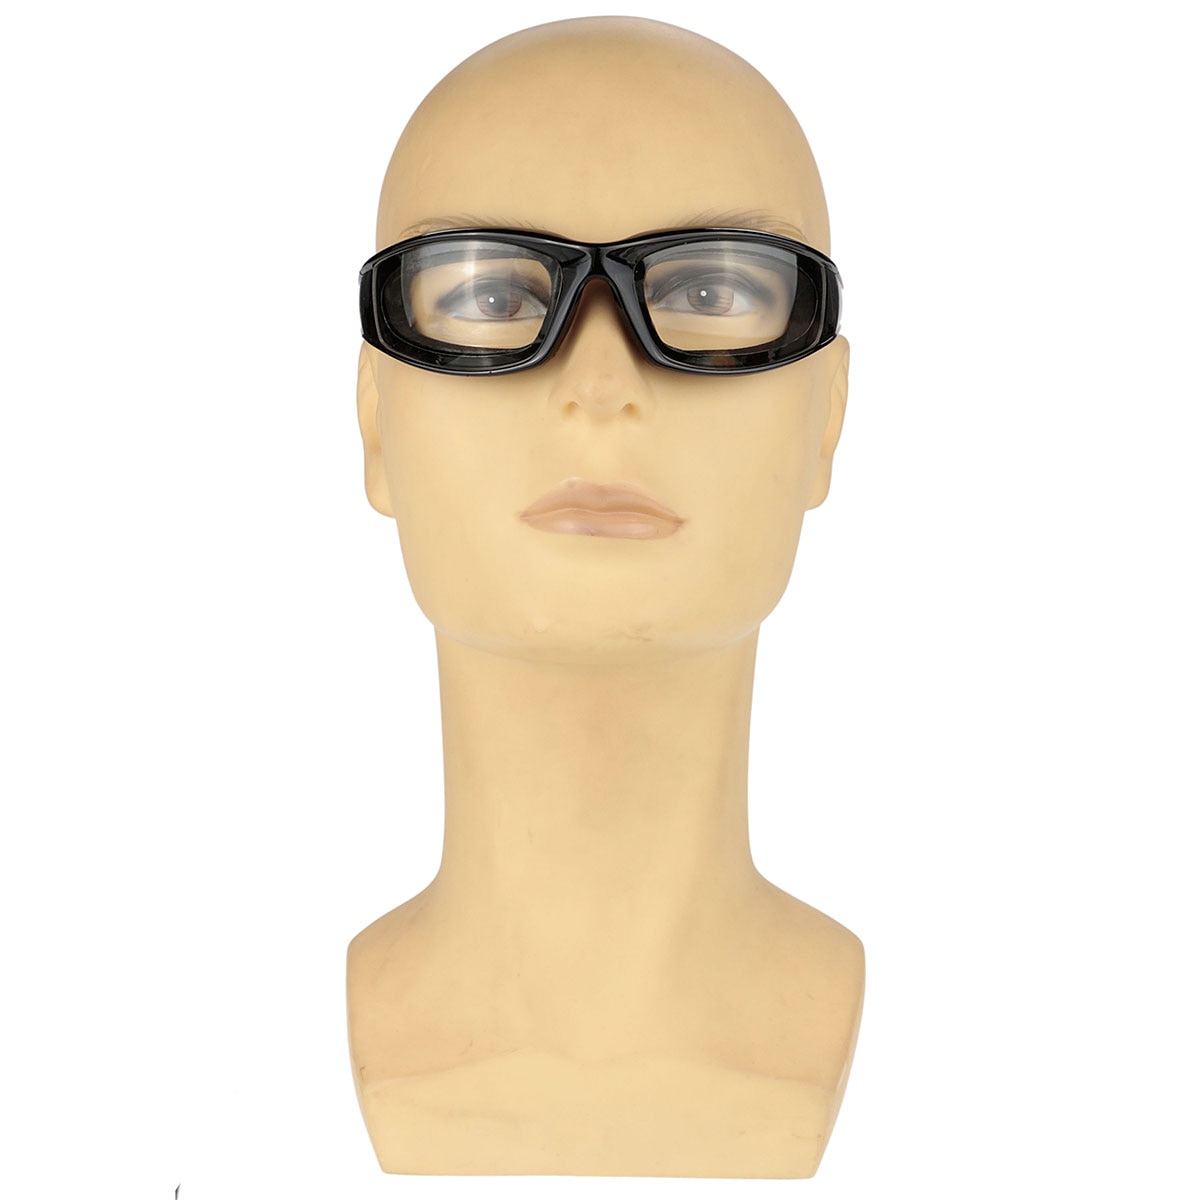 Beskyttelsesbriller briller indbygget i svamp køkken skåret øjenbeskyttelse arbejdsplads sikkerhed vindtæt antisand